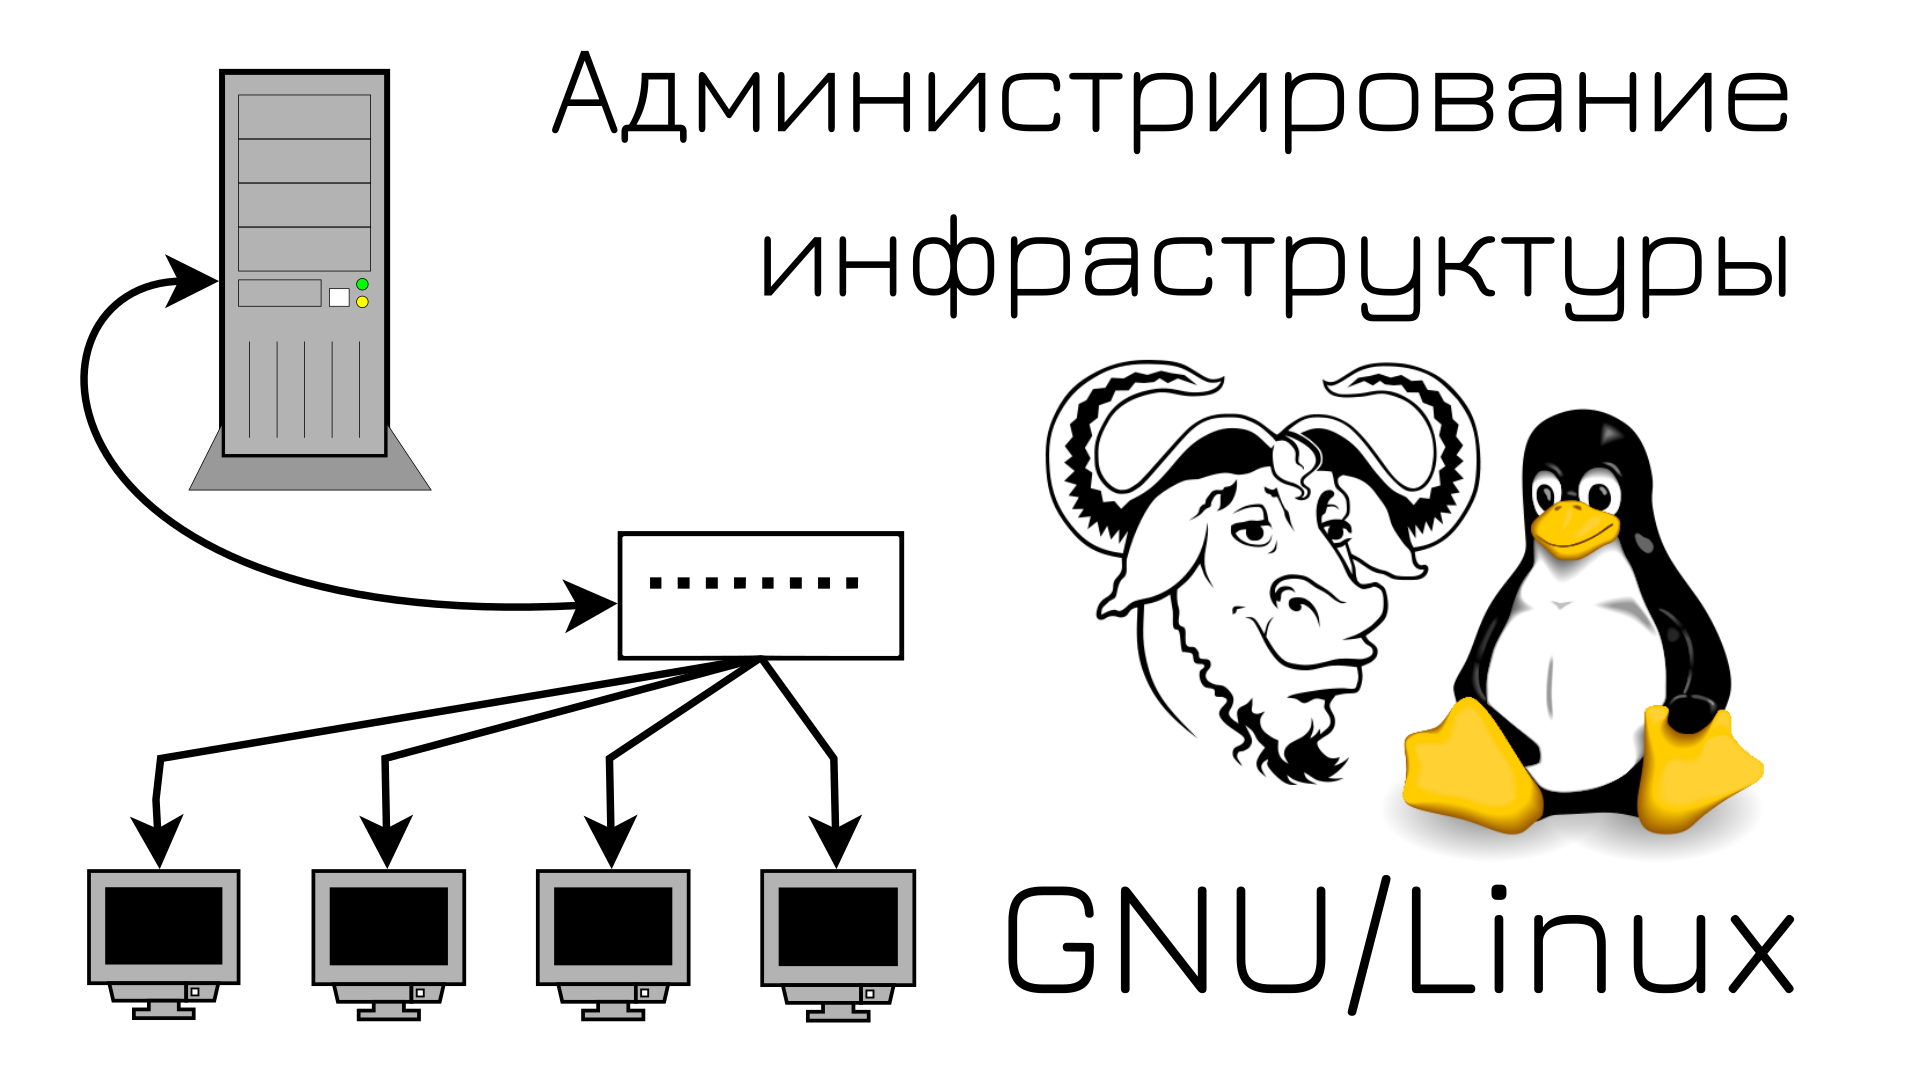 Администрирование Linux. Администратор Linux. Администрирование GNU/Linux. Системное администрирование Linux.